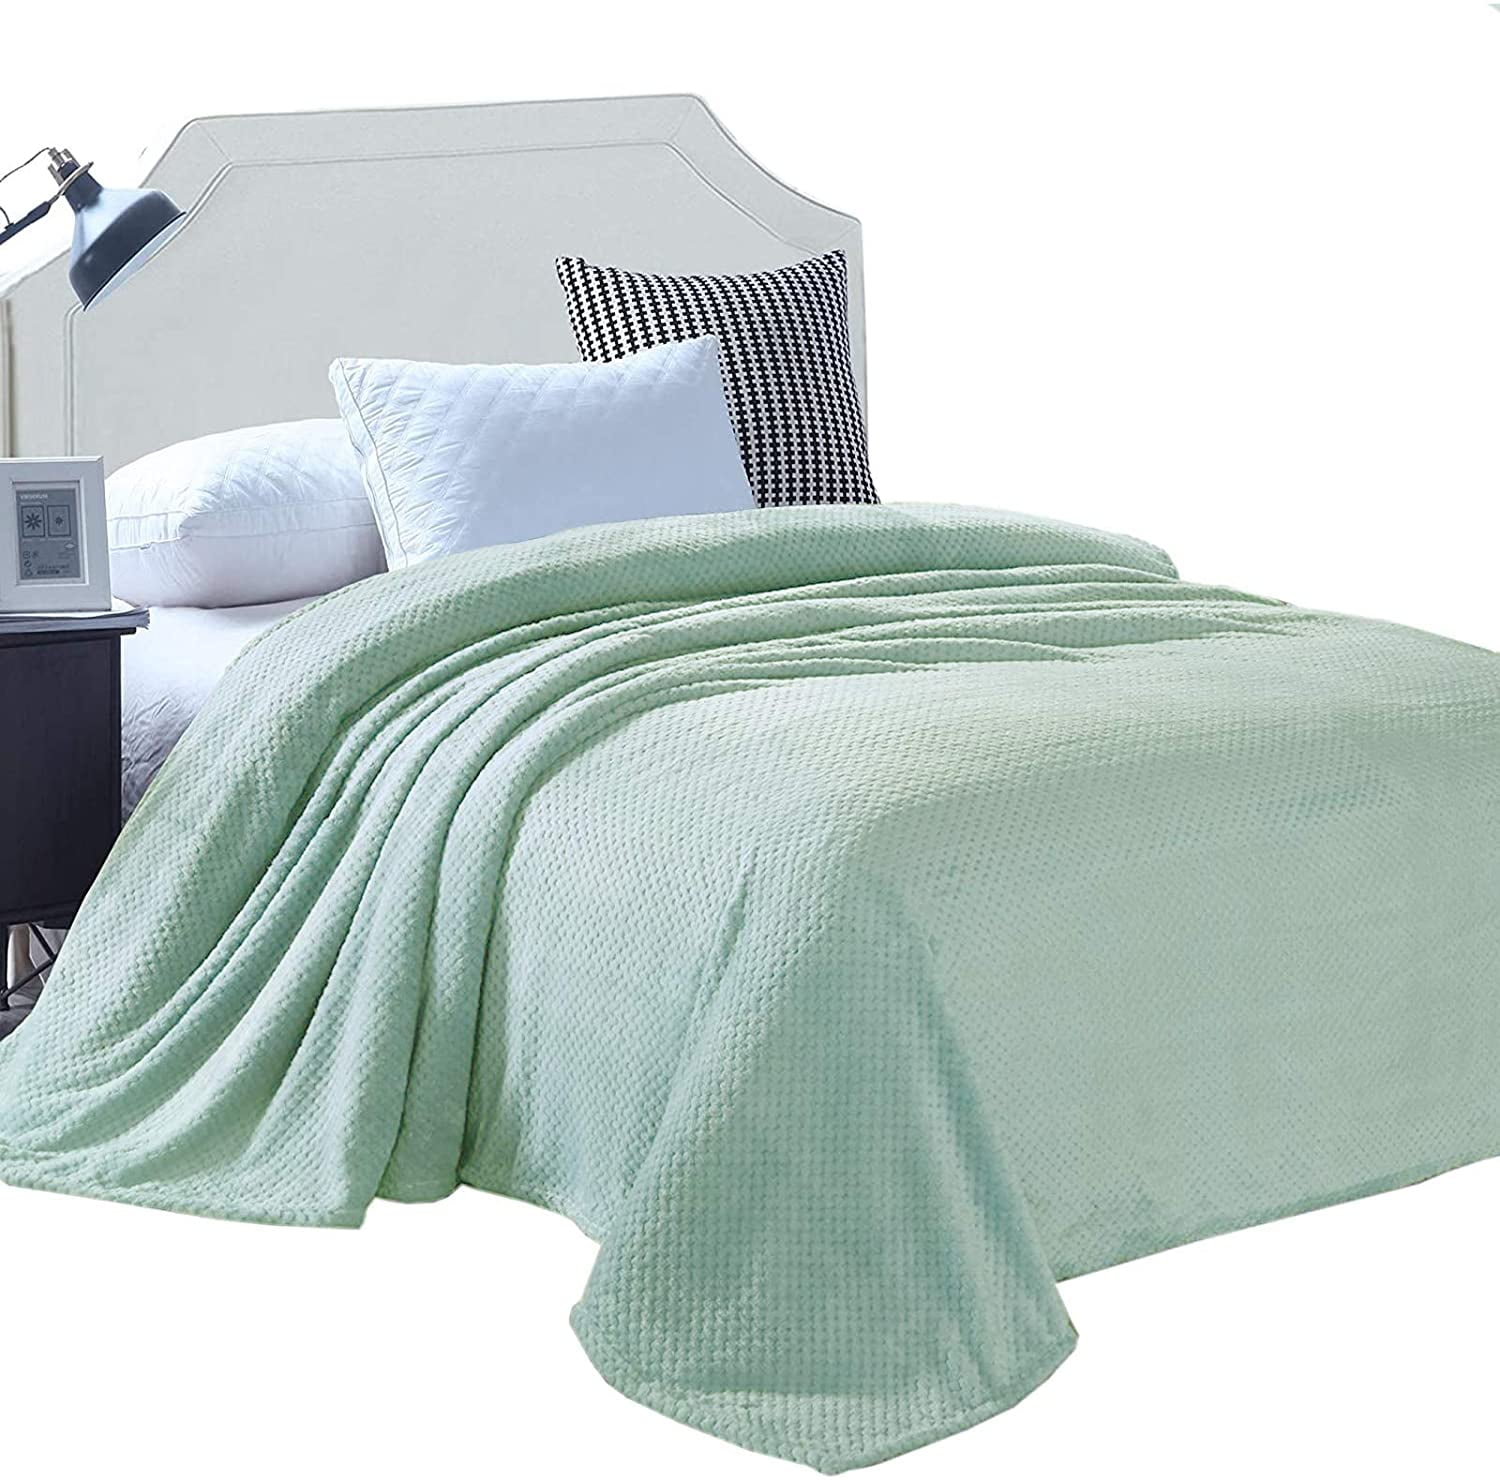 Details about   Fleece Blanket Queen King Size TV Bed Blanket Fuzzy Cozy Soft Blanket Microfiber 